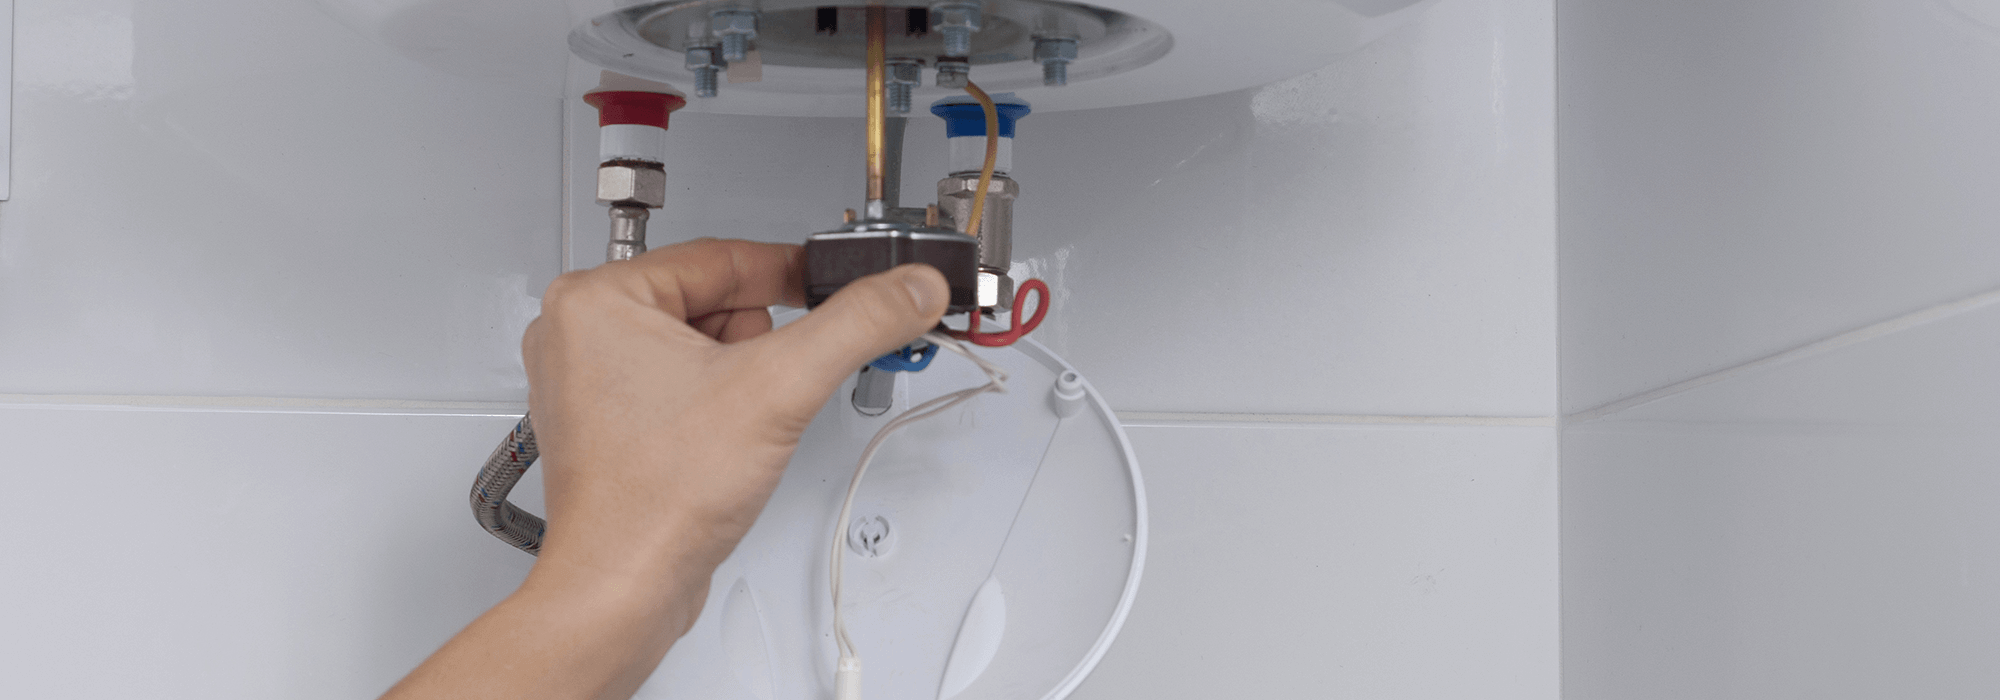 Changer le thermostat d'un ballon d’eau chaude